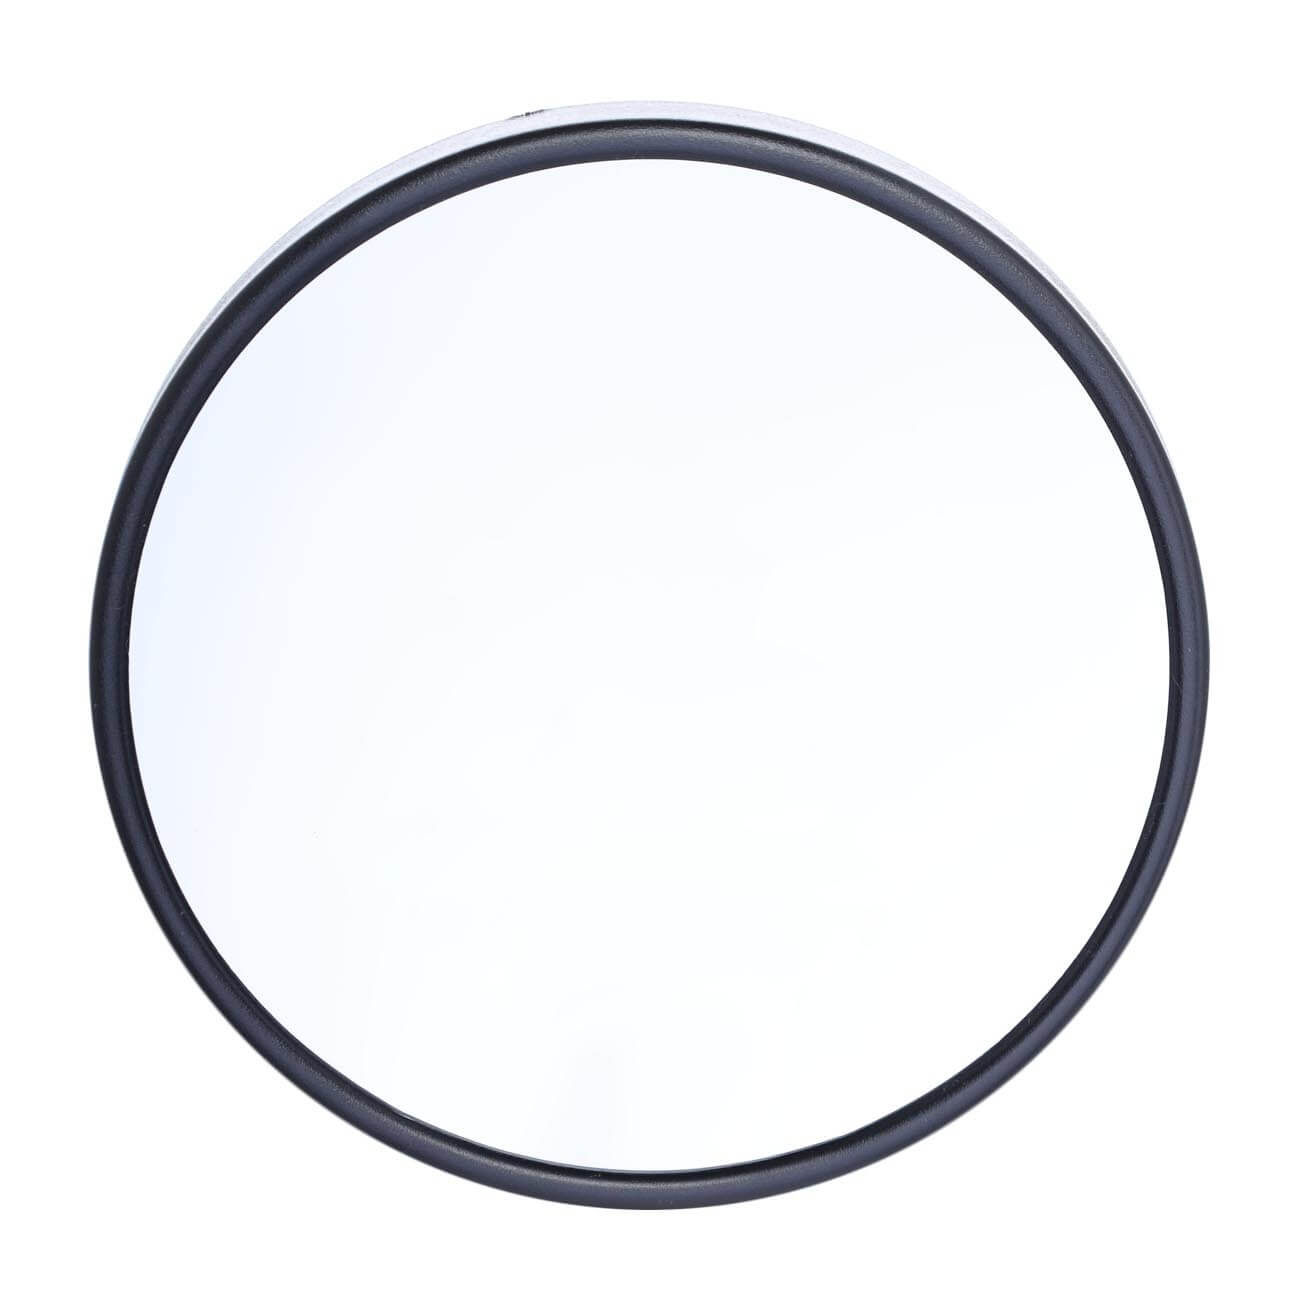 Зеркало подвесное, 13 см, увеличительное, на присосках, пластик, круглое, черное, Mirror подвесное кресло sc 008